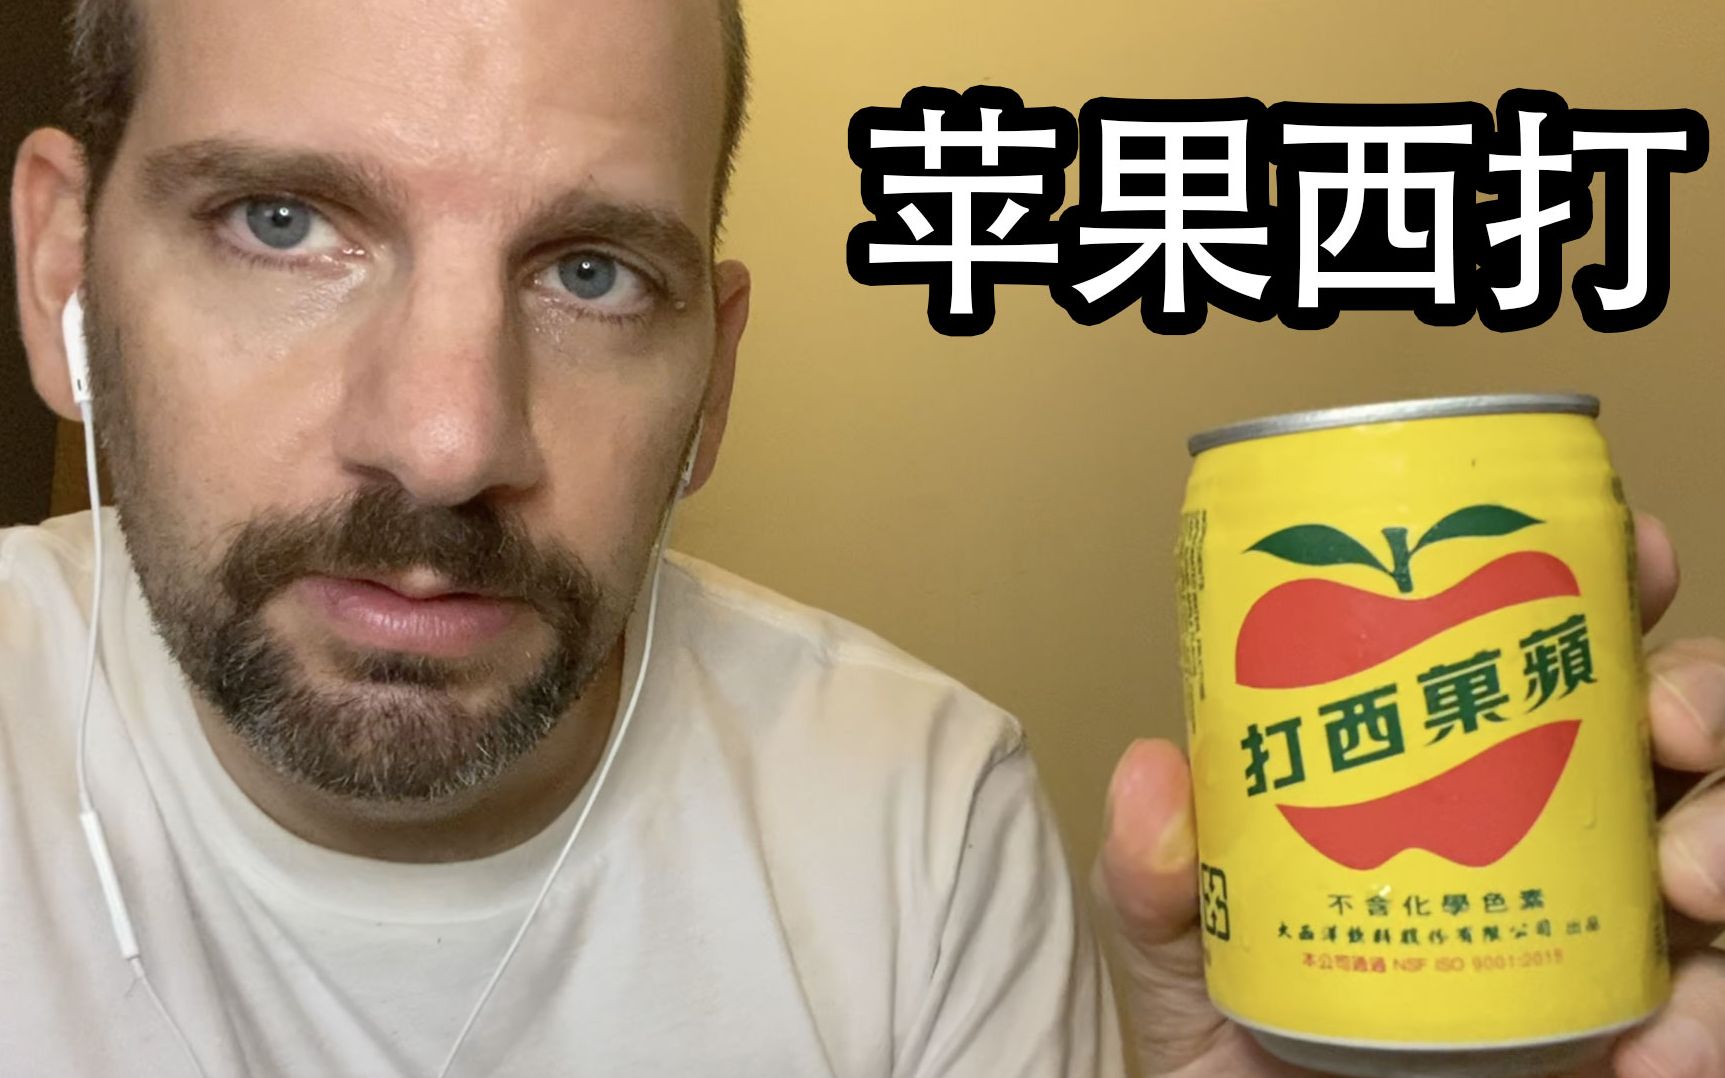 🍎苹果西打 饮料测评🍎【中文】Apple Sidra Drink Review | 小卡的稀奇可乐